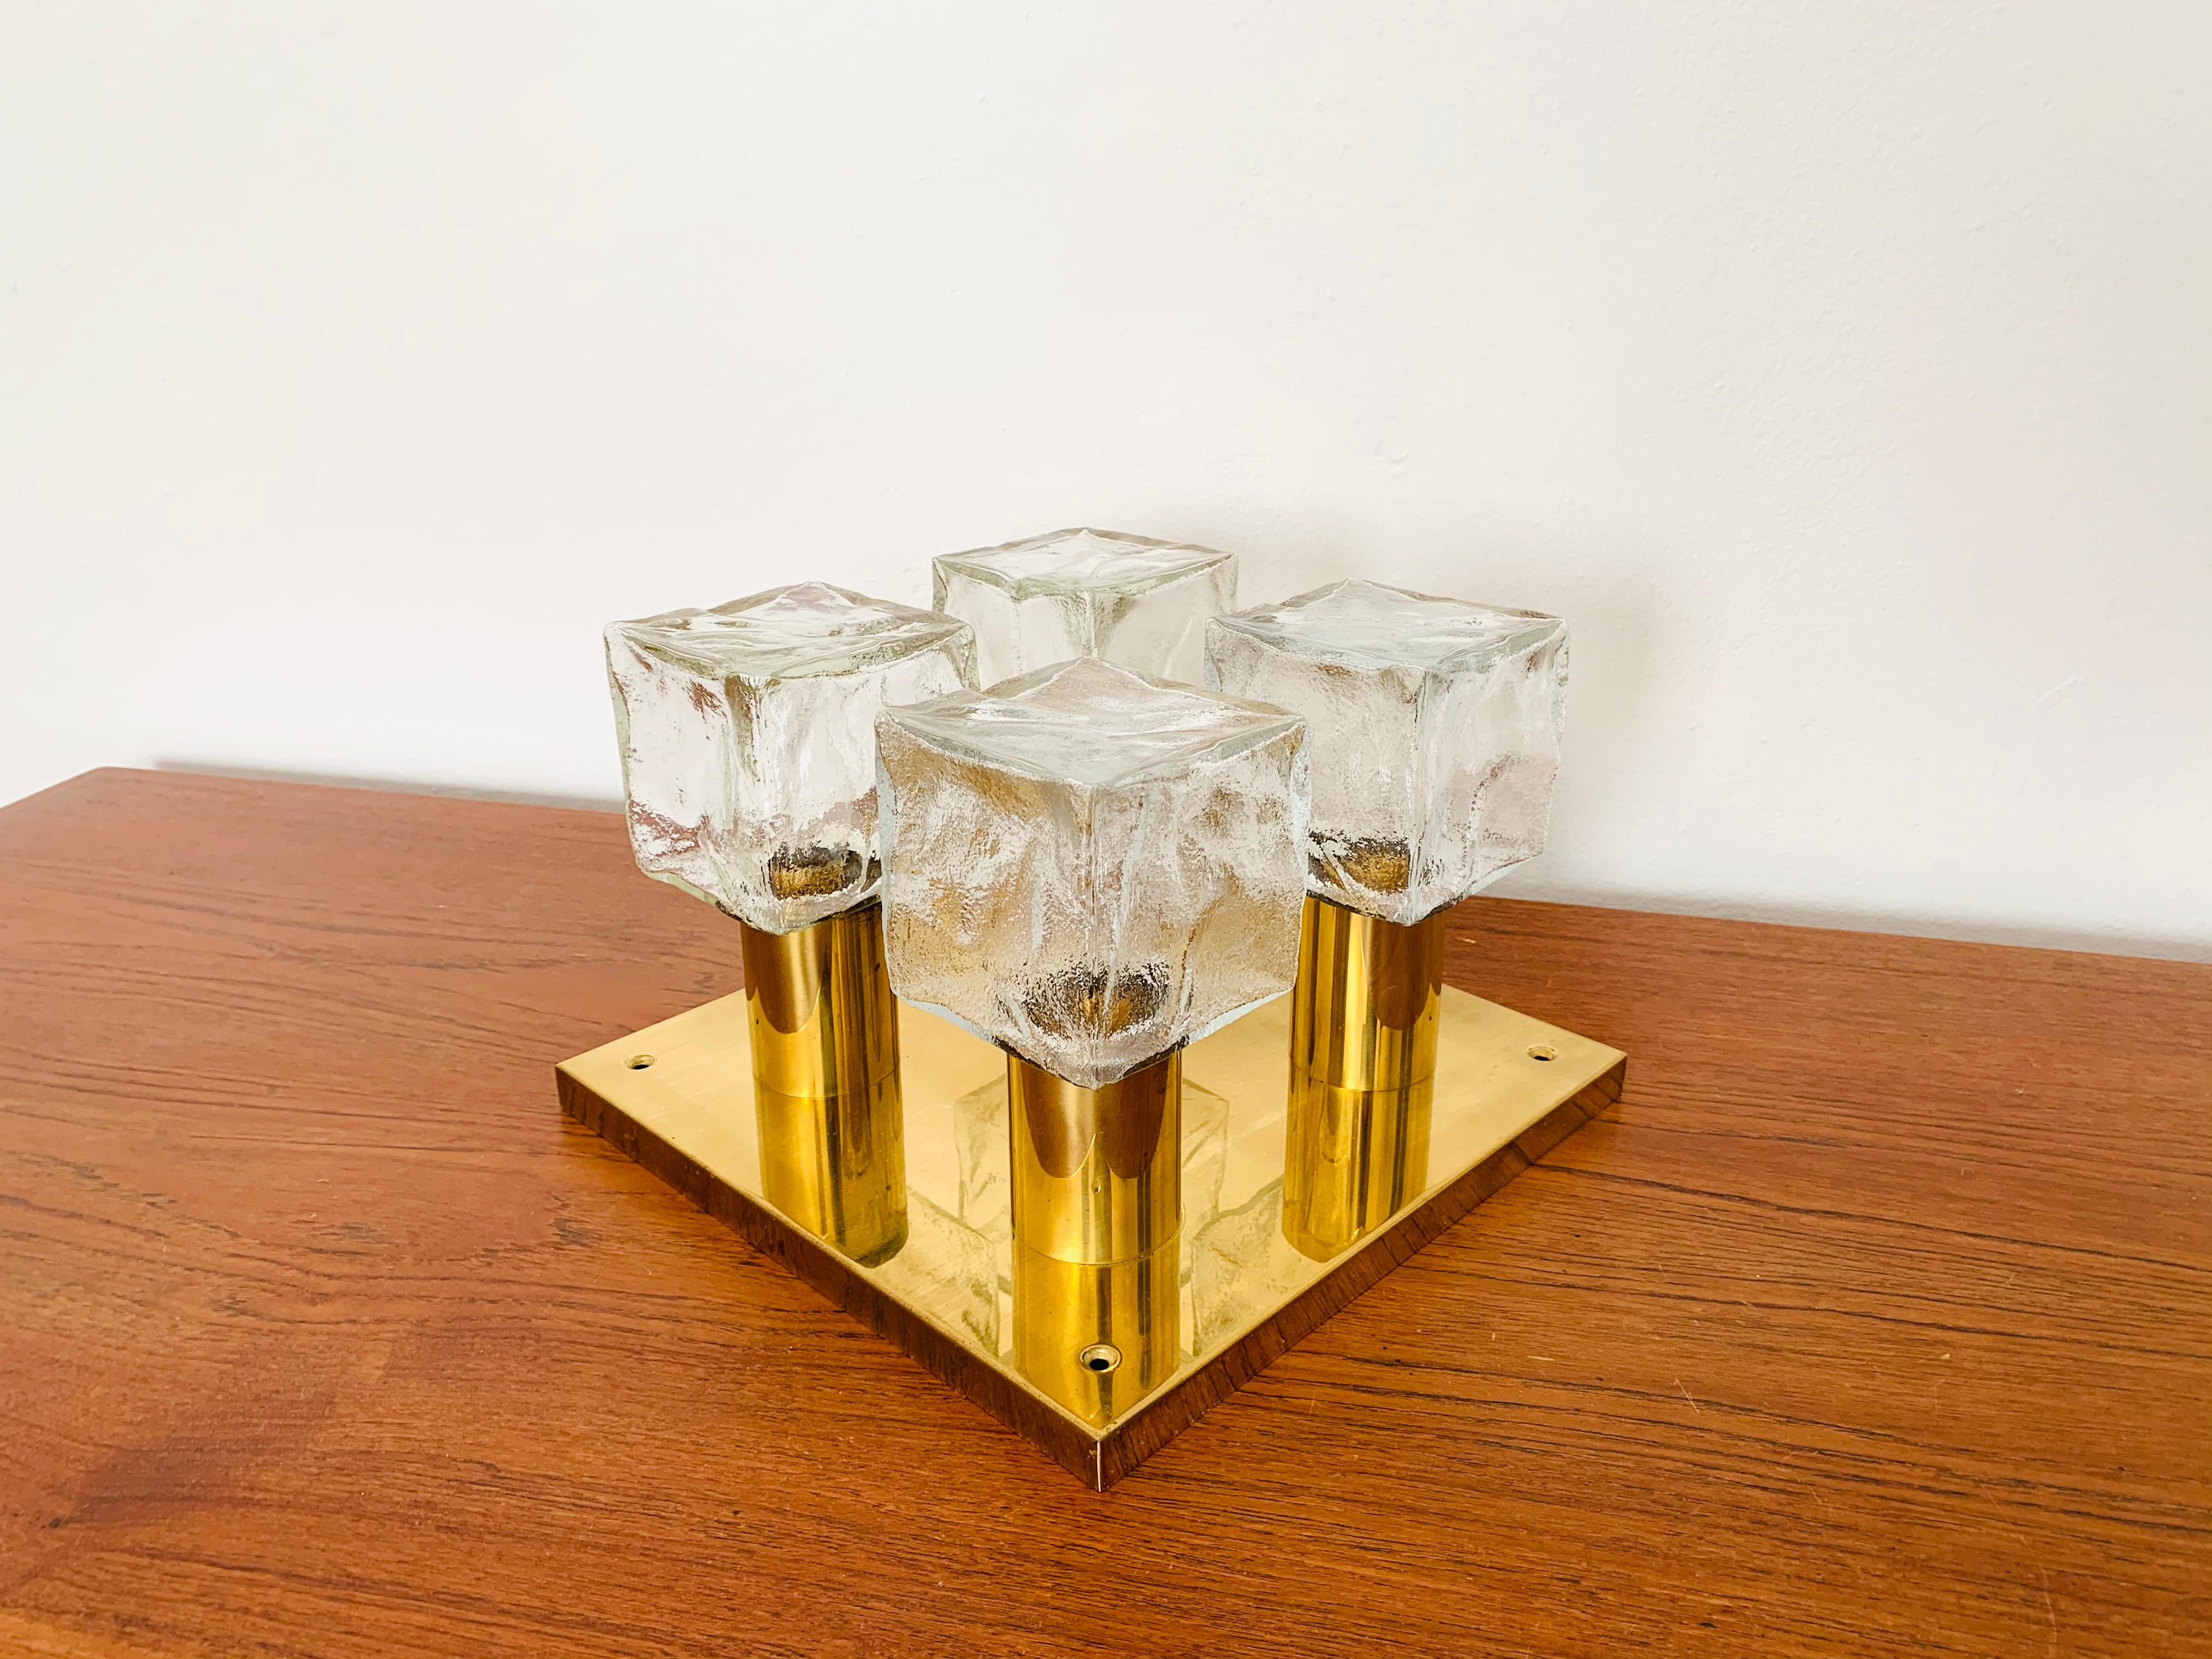 Wunderschöne Deckenlampe aus Eisglas aus den 1960er Jahren.
Die formschönen Murano-Glaselemente erzeugen ein eindrucksvolles, funkelndes Lichtspiel.
Sehr hochwertig verarbeitet und ein echter Blickfang für jede Wohnung.

Design: J.T.